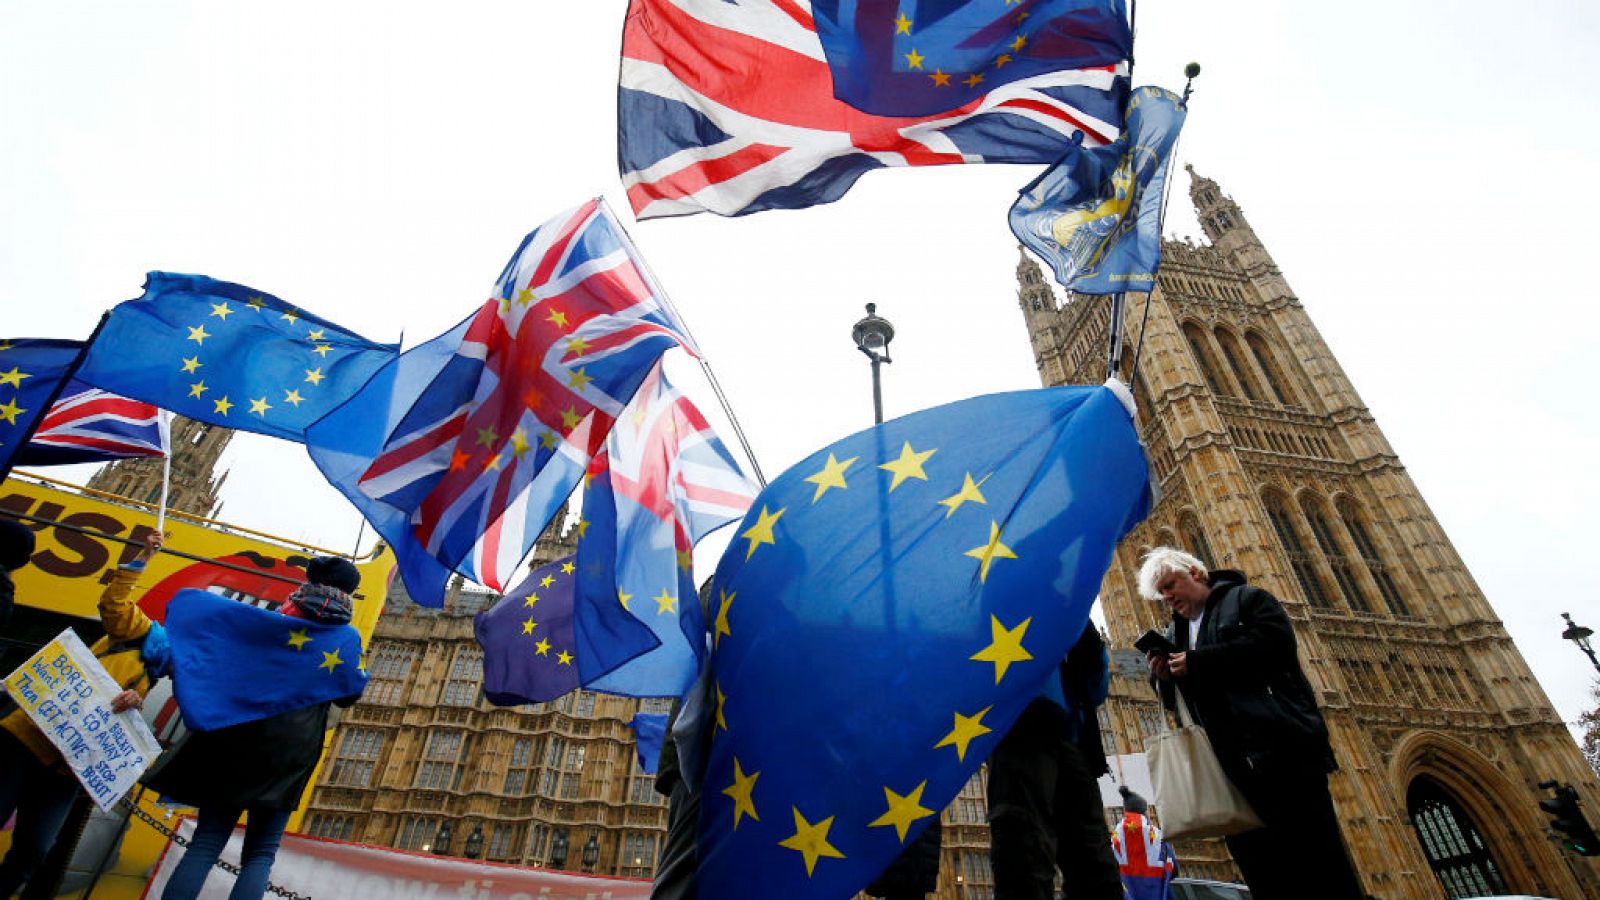  Boletines RNE - El Abogado General del TJUE dice que el Reino Unido puede dar marcha atrás al 'brexit' - Escuchar ahoa 